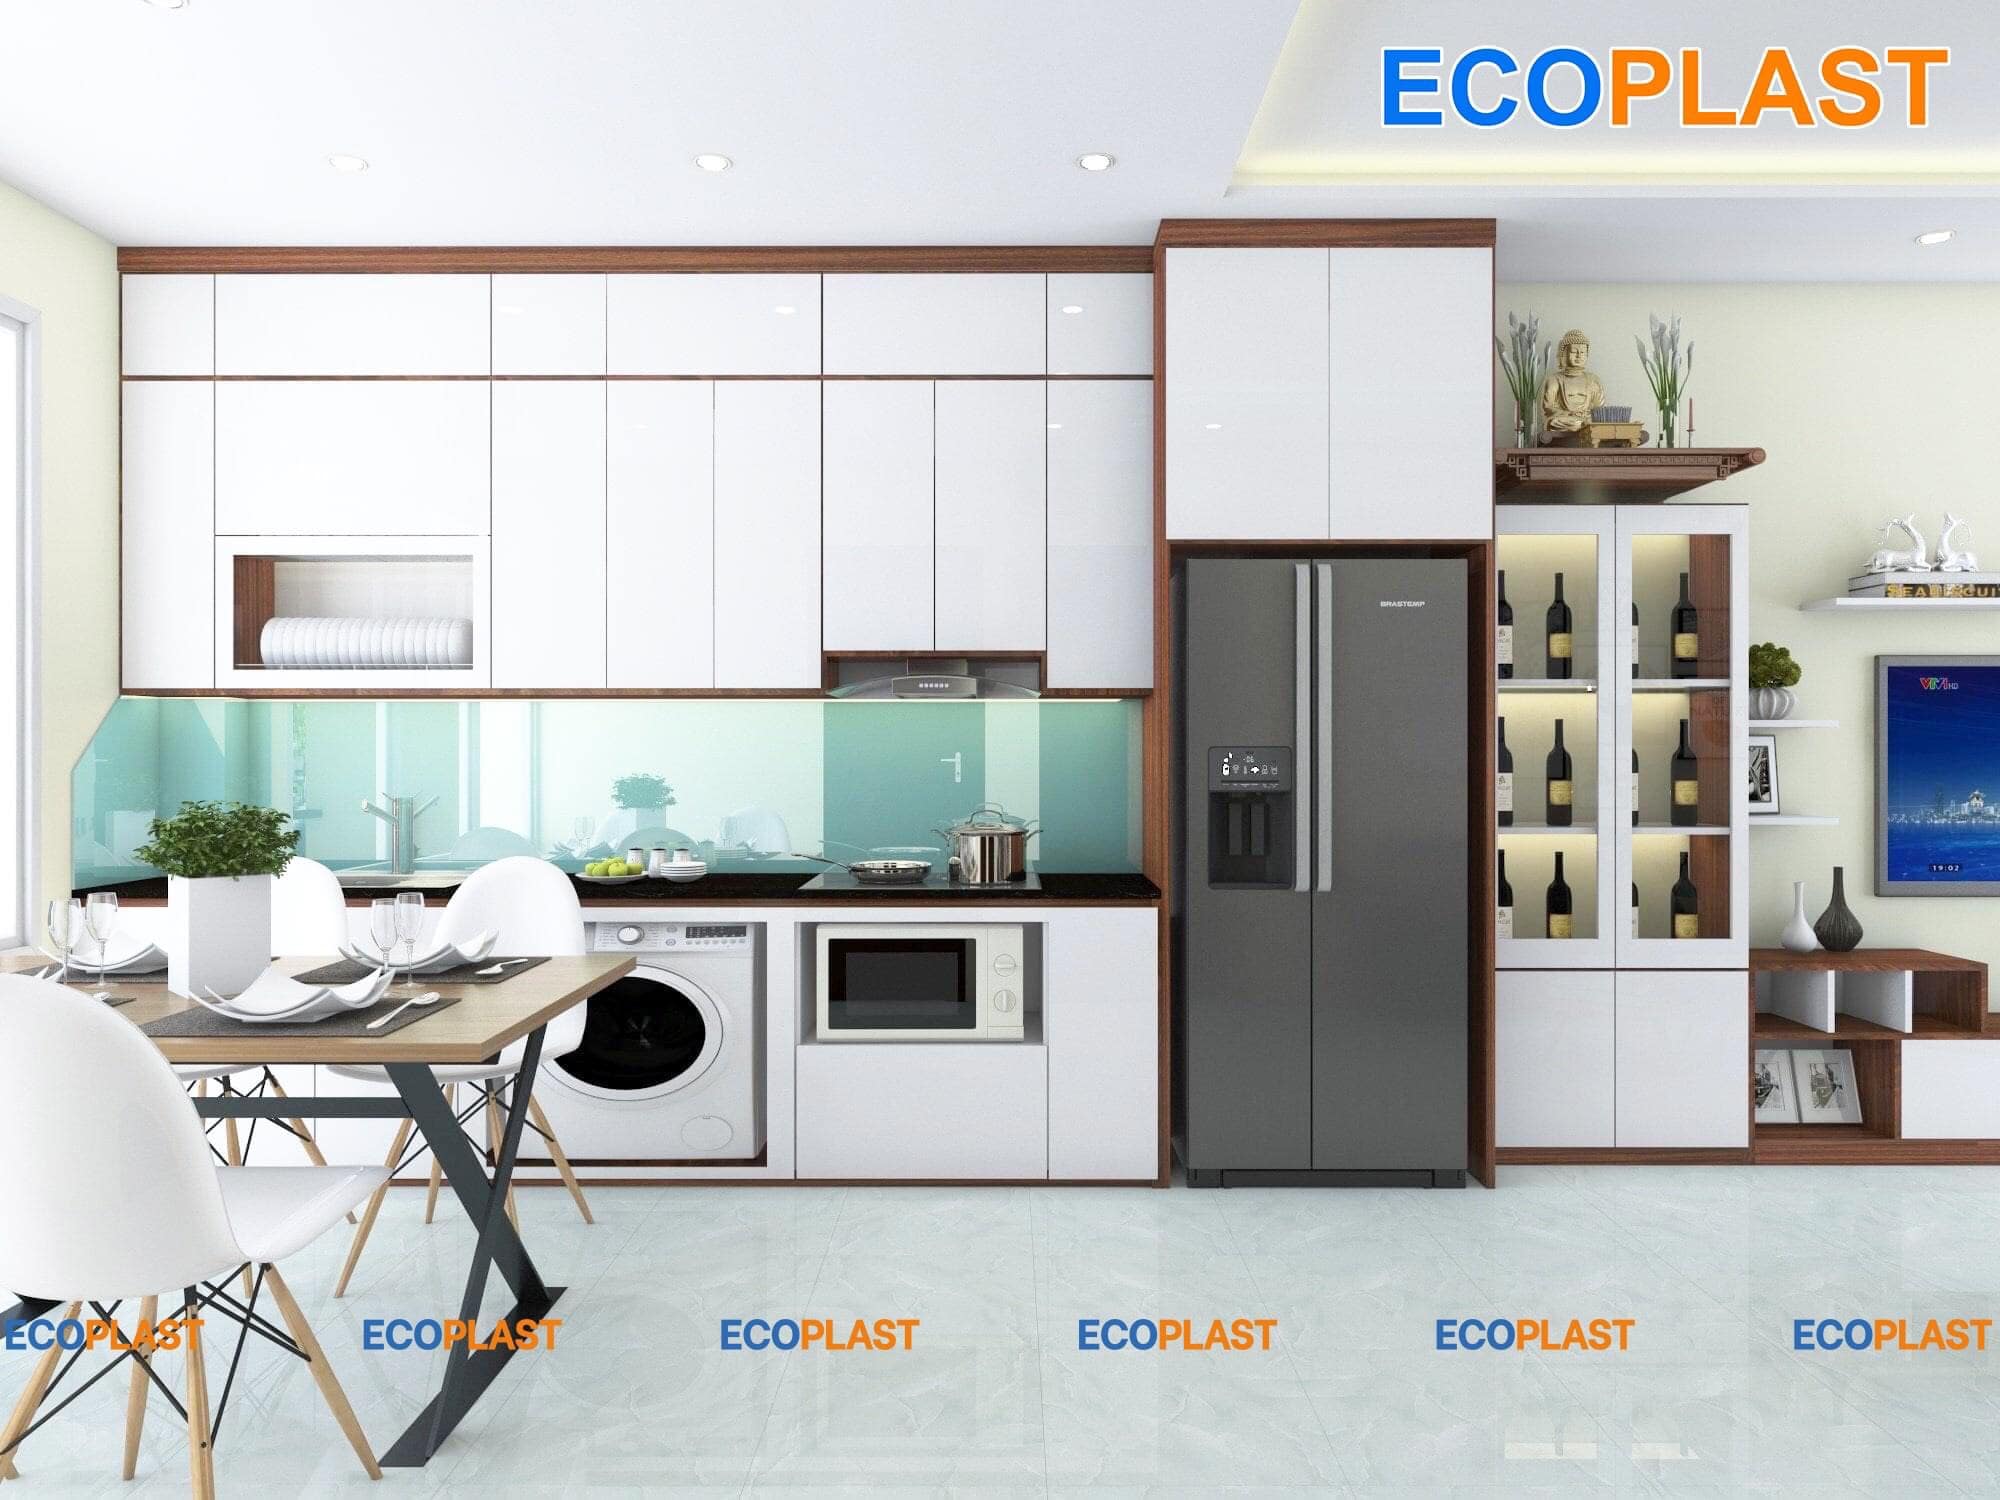 Tủ bếp nhựa Ecoplast: Tủ bếp nhựa Ecoplast được thiết kế với chất liệu nhựa cao cấp, an toàn cho sức khỏe và đặc biệt thông minh, giúp bạn tiết kiệm không gian, tạo nên một không gian bếp đẹp và tiện nghi. Sản phẩm bền với môi trường, không phát ra bất kỳ chất độc hại nào, đảm bảo sức khoẻ cho cả gia đình bạn. Hãy đến và sở hữu ngay một tủ bếp nhựa Ecoplast cho ngôi nhà của bạn.